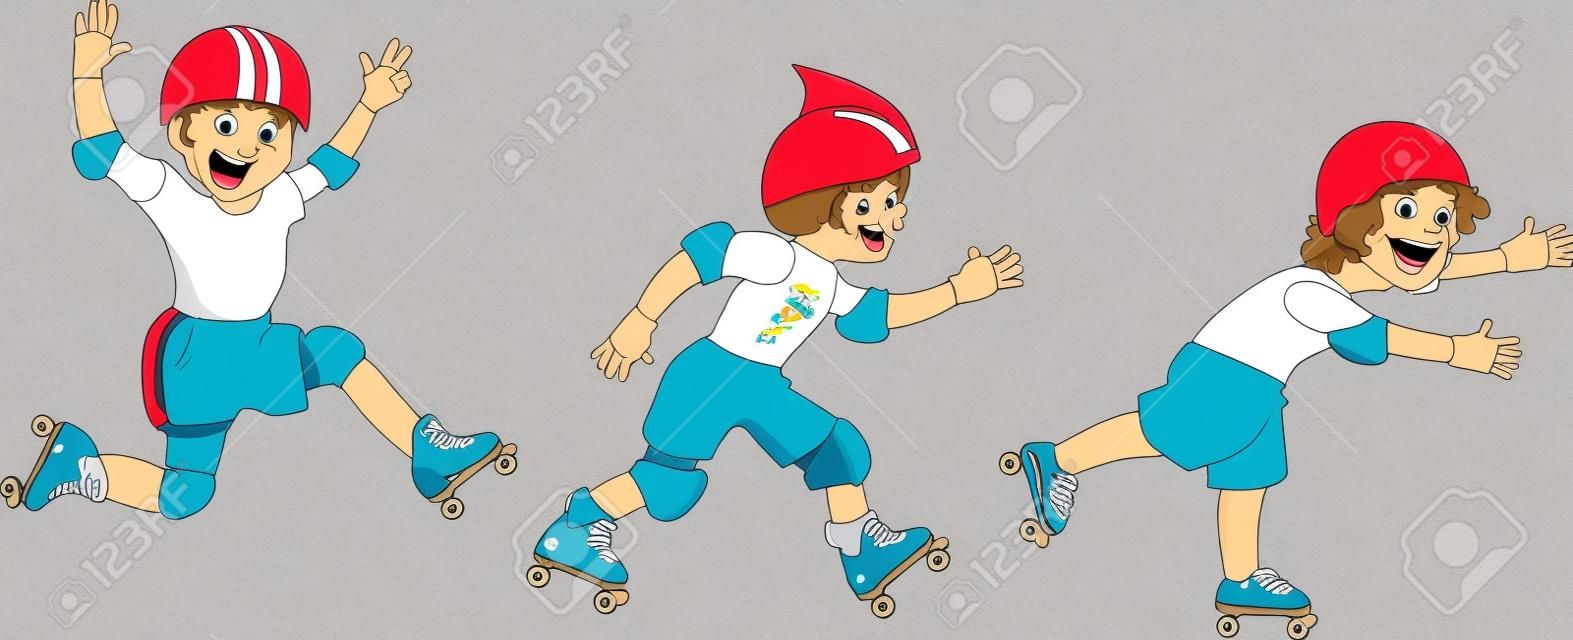 3 つの男の子漫画文字ローラー スケートは、白で隔離